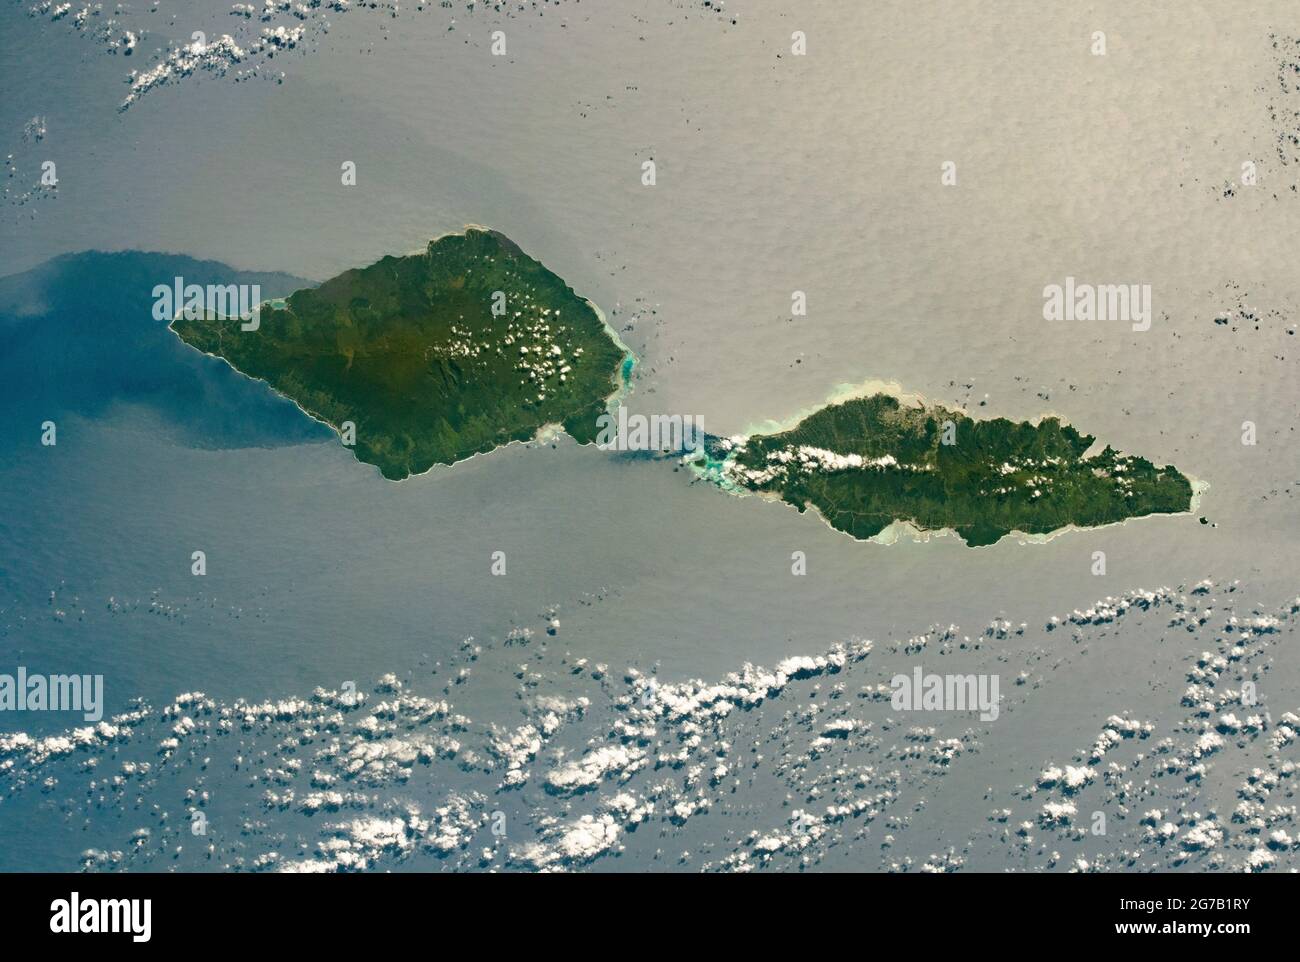 Savai'i und Upolu, Samoa, fotografiert von der Internationalen Raumstation, als sie den Südpazifik überschritt. Savai'i, die westlichste Insel Samoas, ist 80 km (50 mi) lang; Upolu ist fast so lang (74 km/46 mi). Die dunkelgrünen Zentren der Inseln spiegeln die dichteren tropischen Wälder und höheren Lagen im Vergleich zu den unteren, hellgrünen Küstenregionen um die Ränder. Die Straße von Apolima trennt die 2 Inseln. Eine einzigartige, optimierte und digital verbesserte Version eines NASA-Bildes/Credit NASA Stockfoto